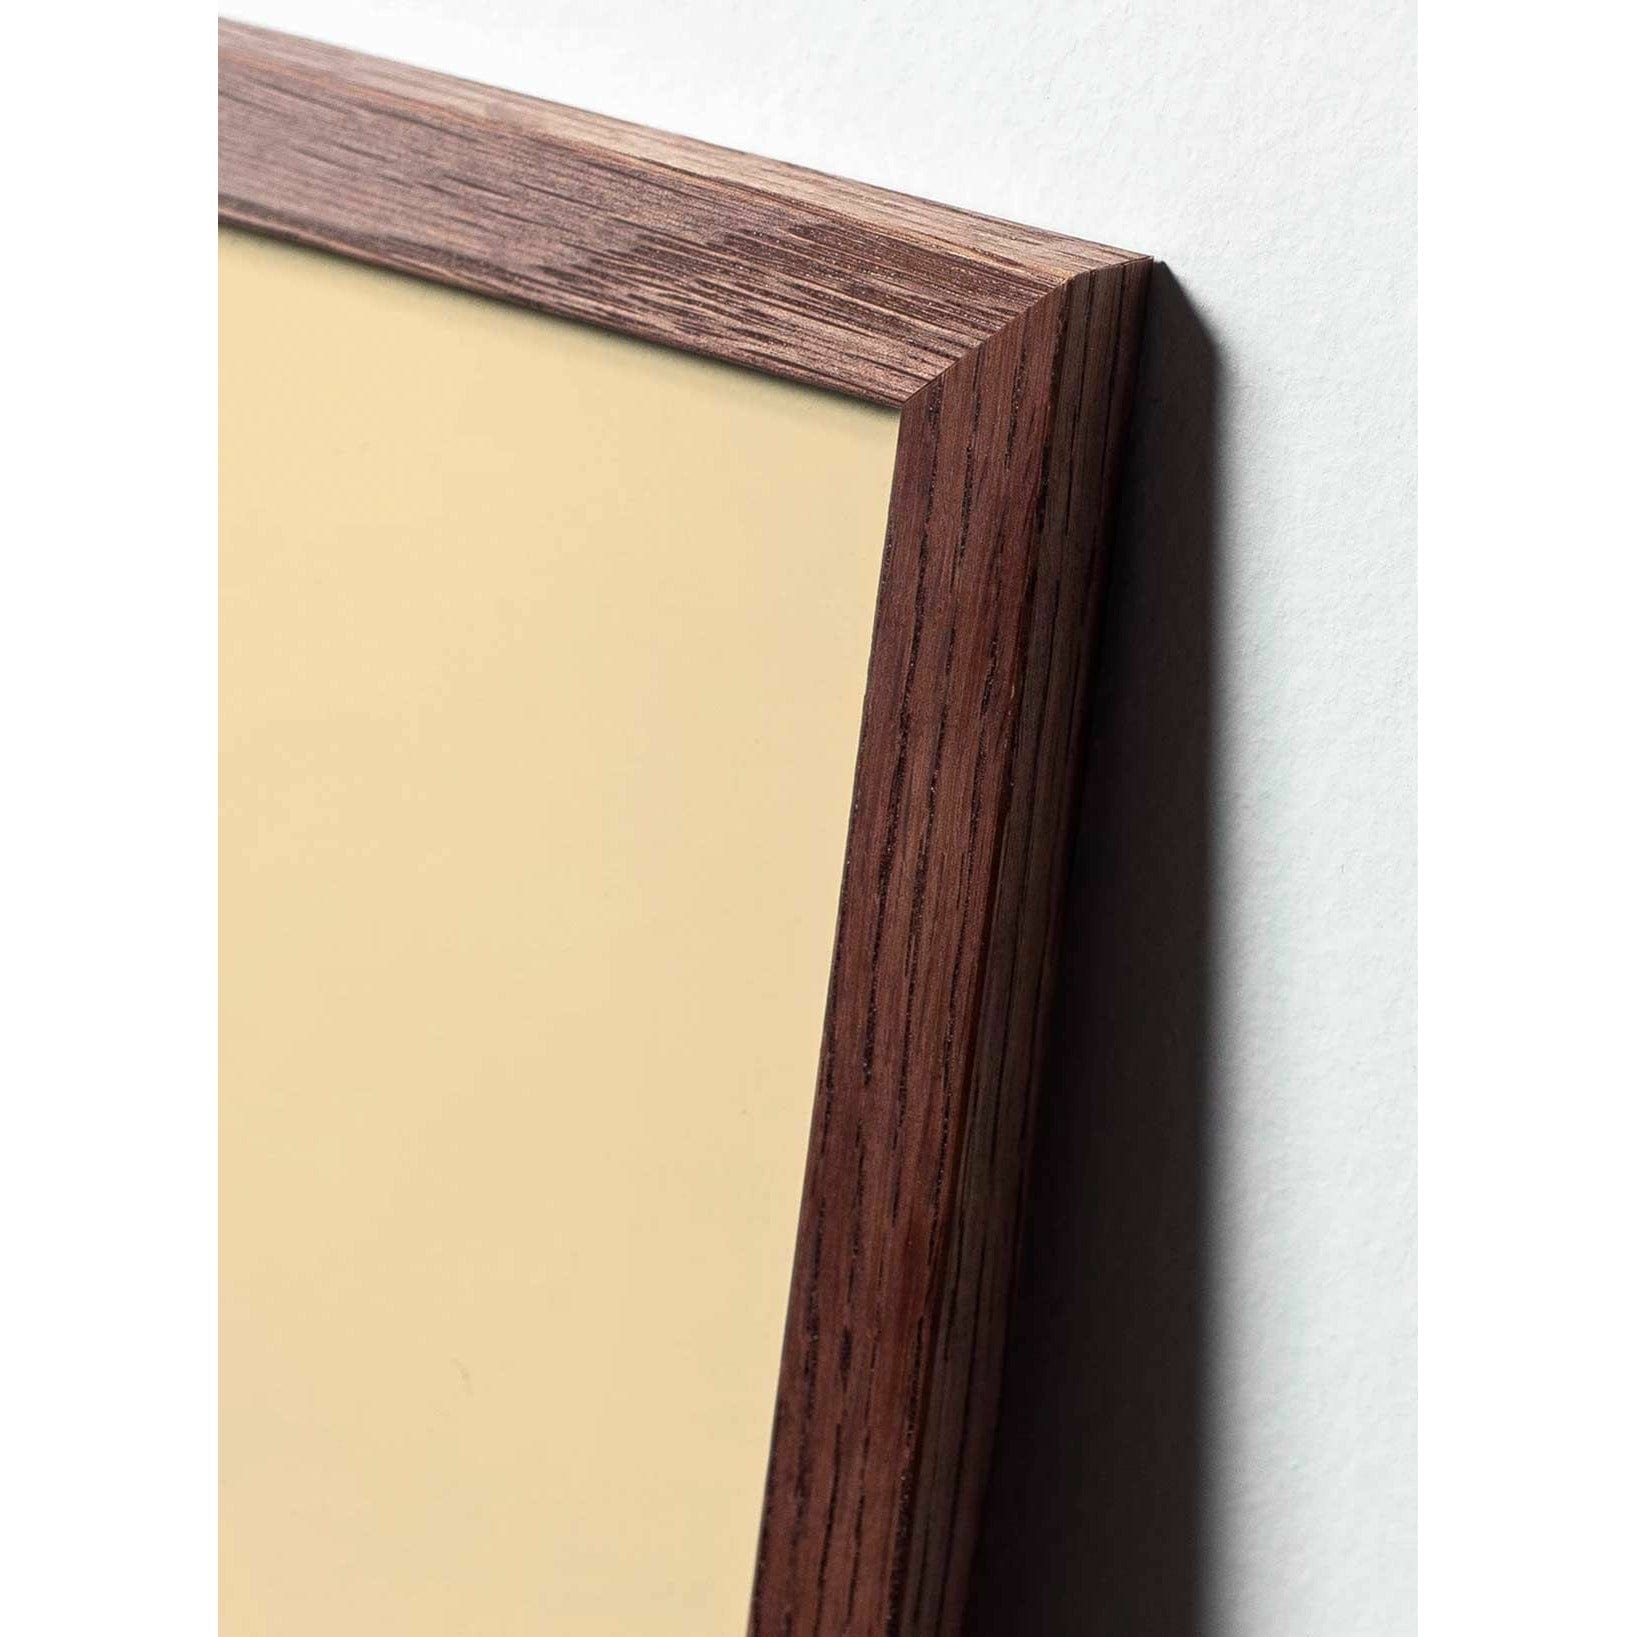 Póster clásico de pino de pino de creación, marco de madera oscura A5, fondo de color arena